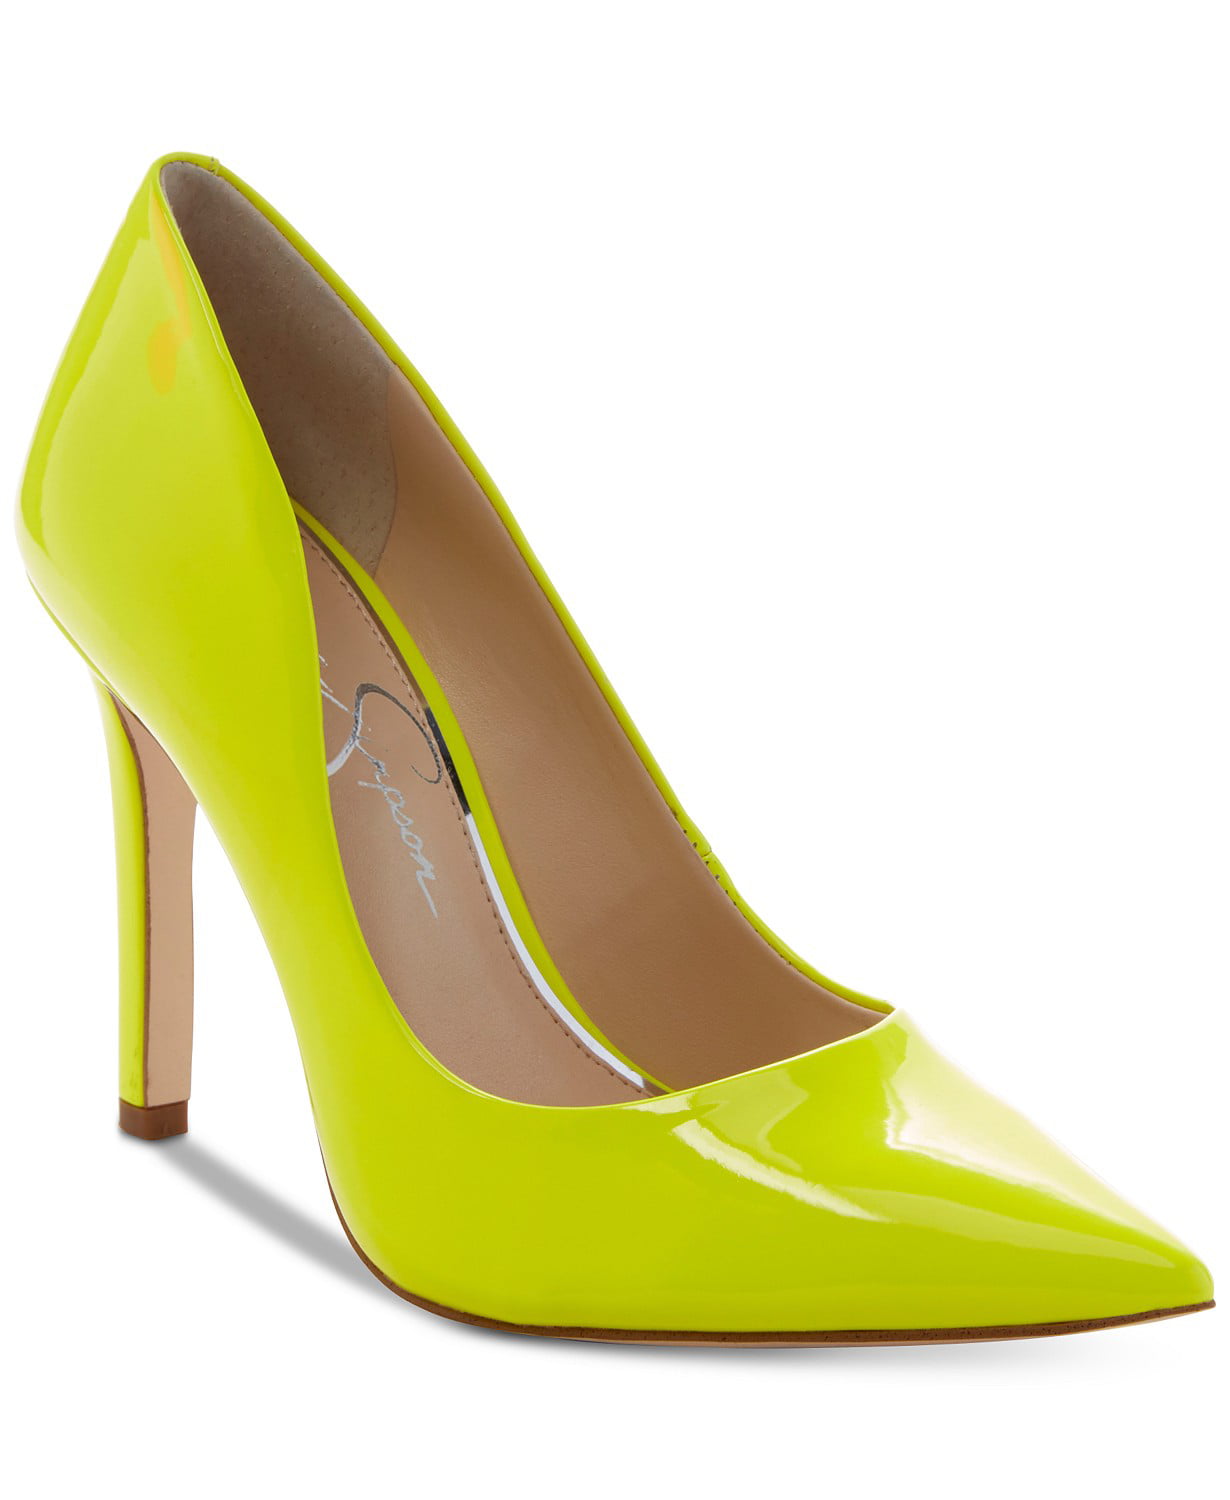 neon heels pumps